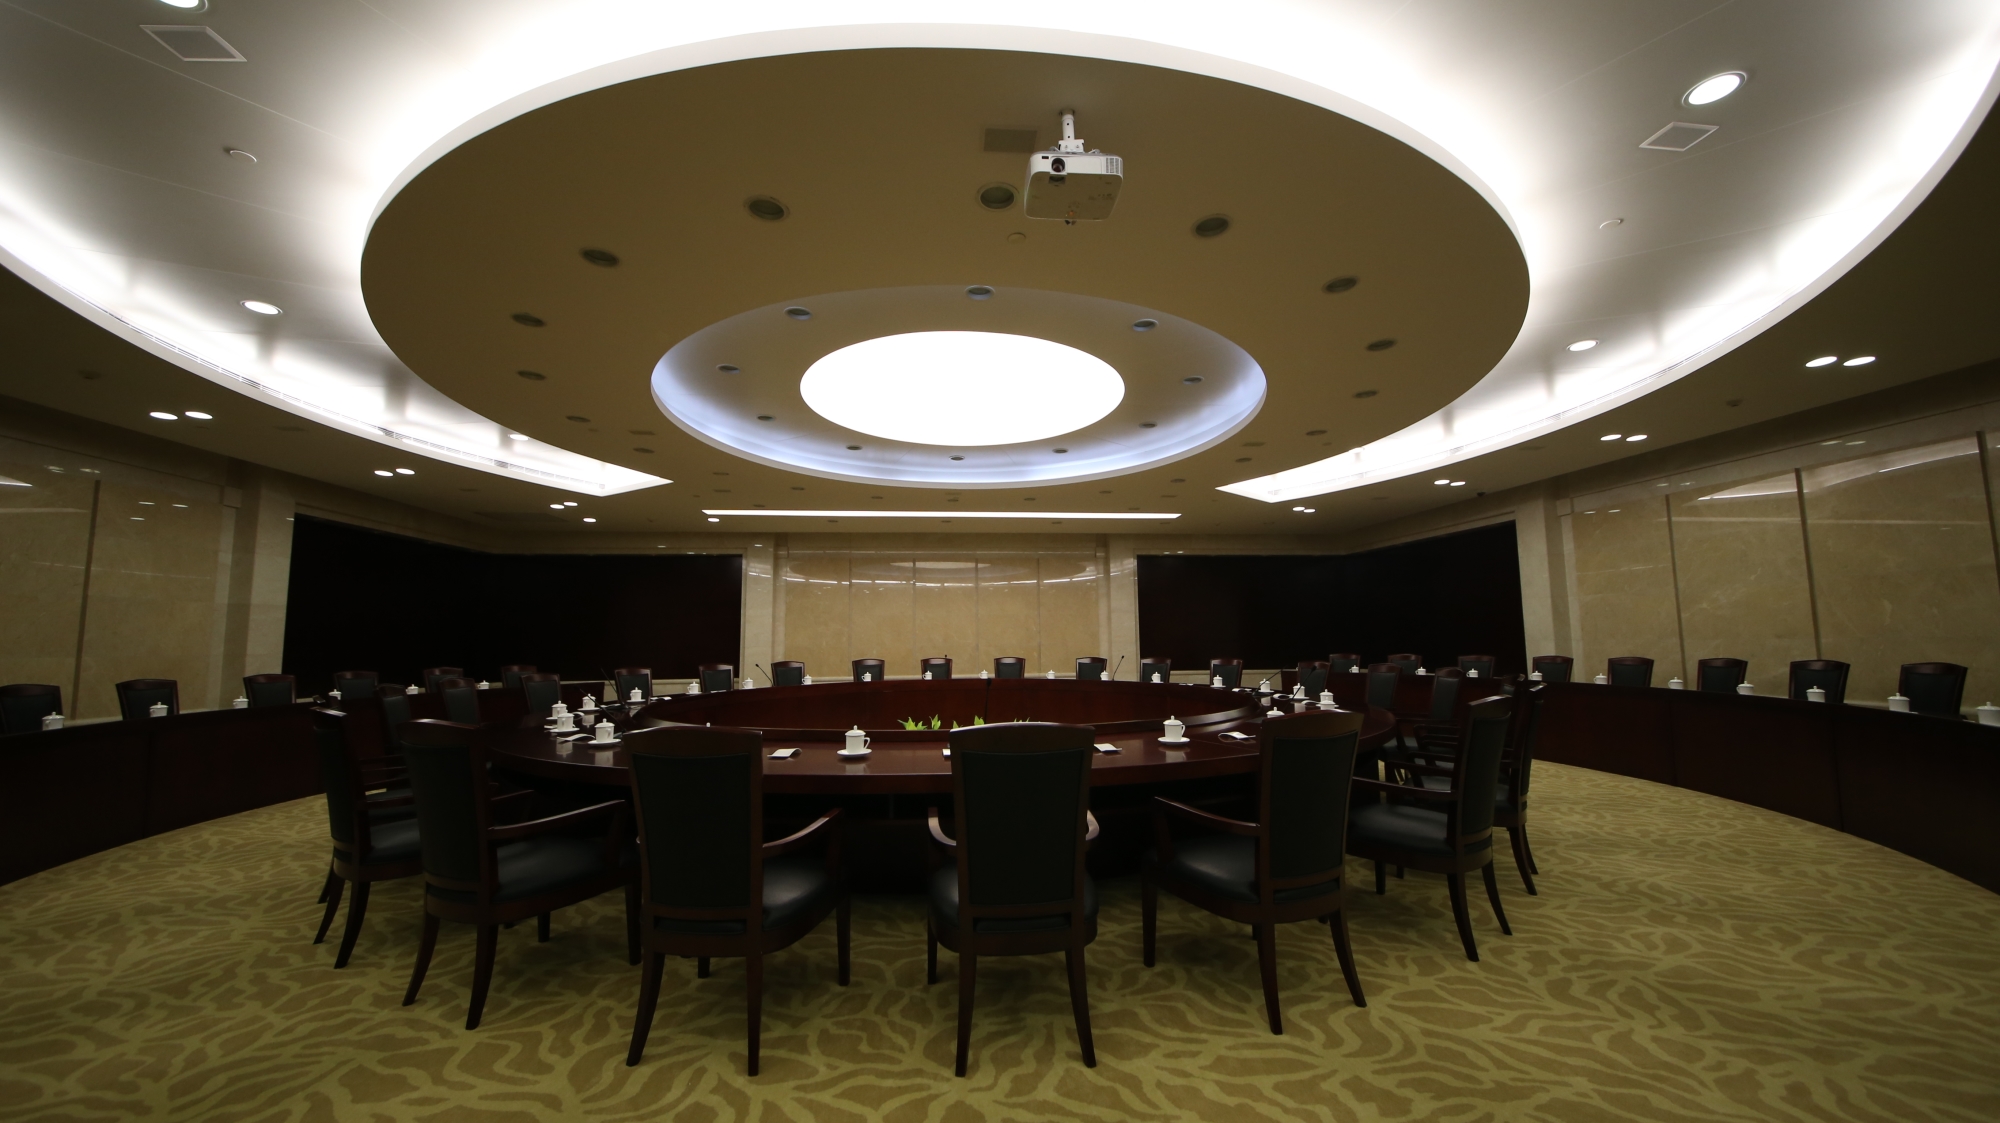 老榆木餐桌圆桌酒店电动大圆桌1.8米2米2.2米2.6米3.6米定做直销-阿里巴巴